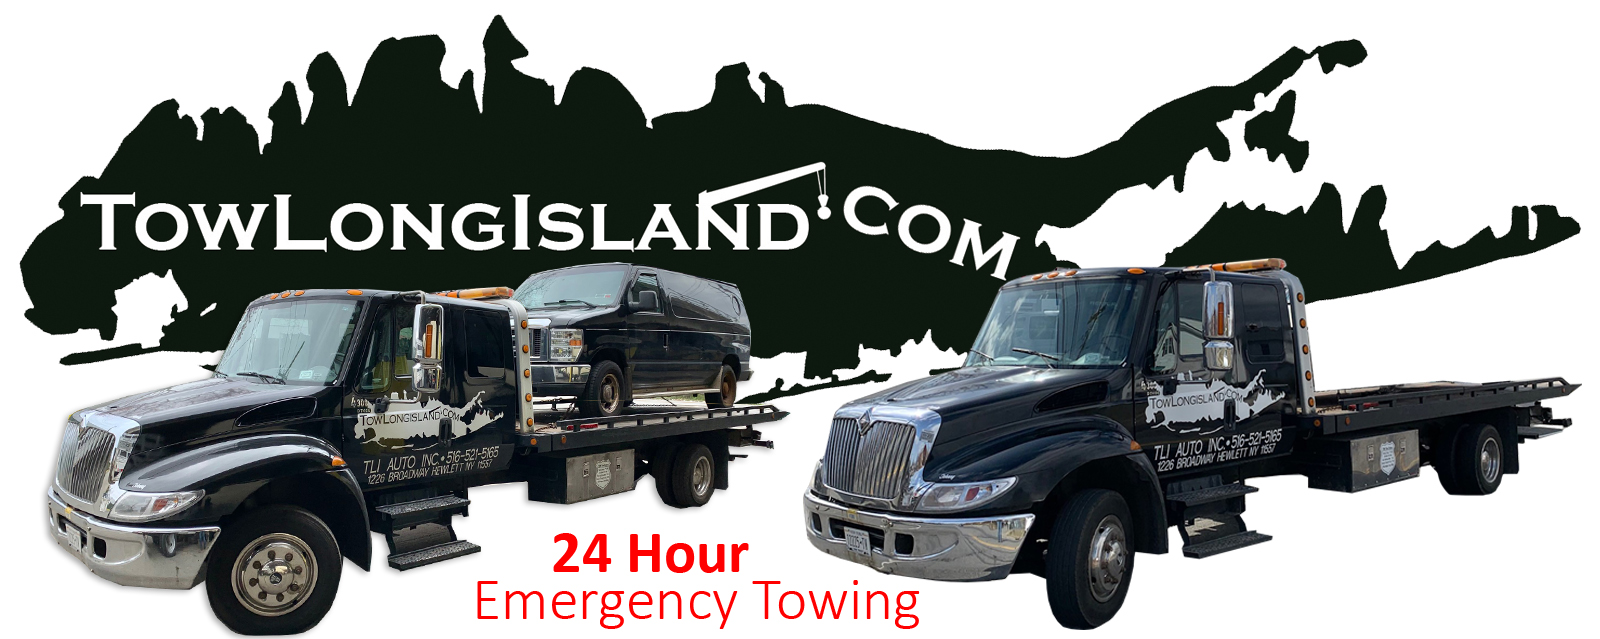 24 Hour Towing Service | Jamaica, Queens County, New York | TowLongIsland.com 516.521.5165